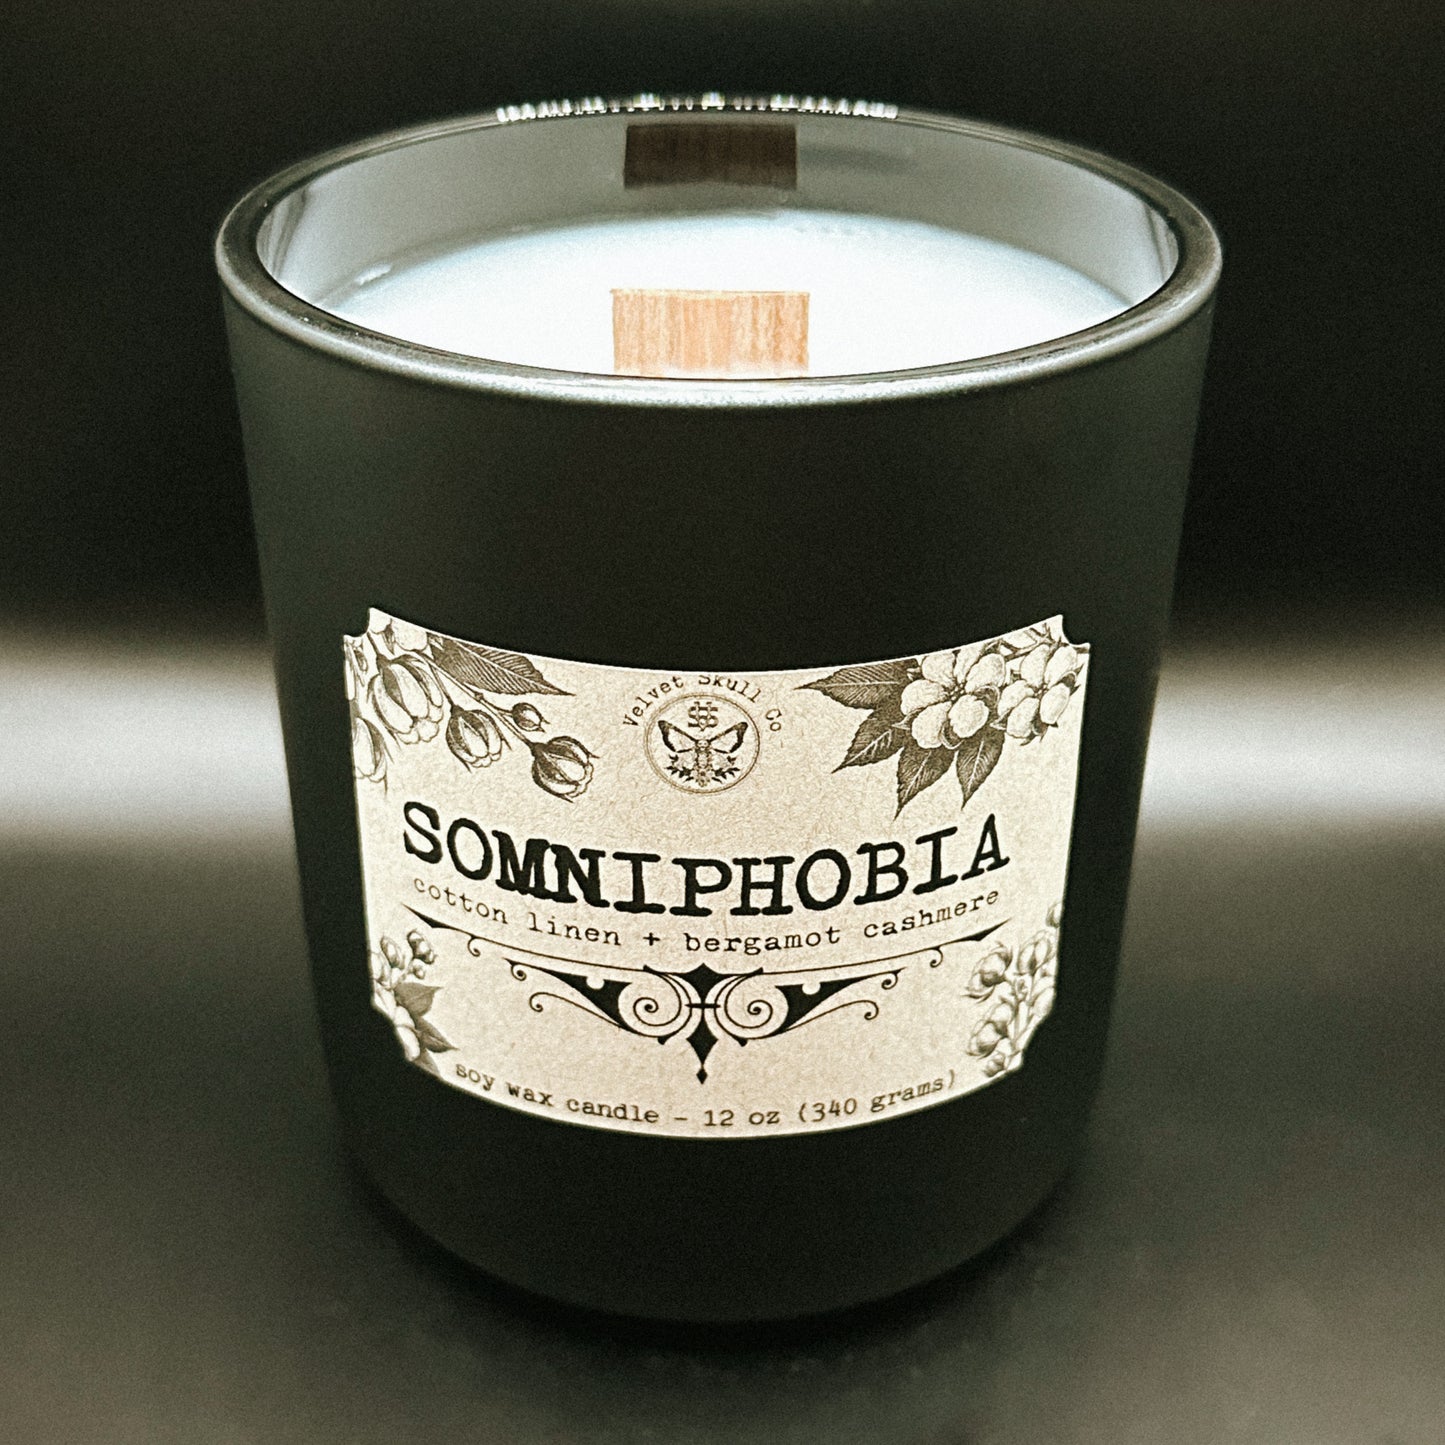 Somniphobia [sleep] Candle